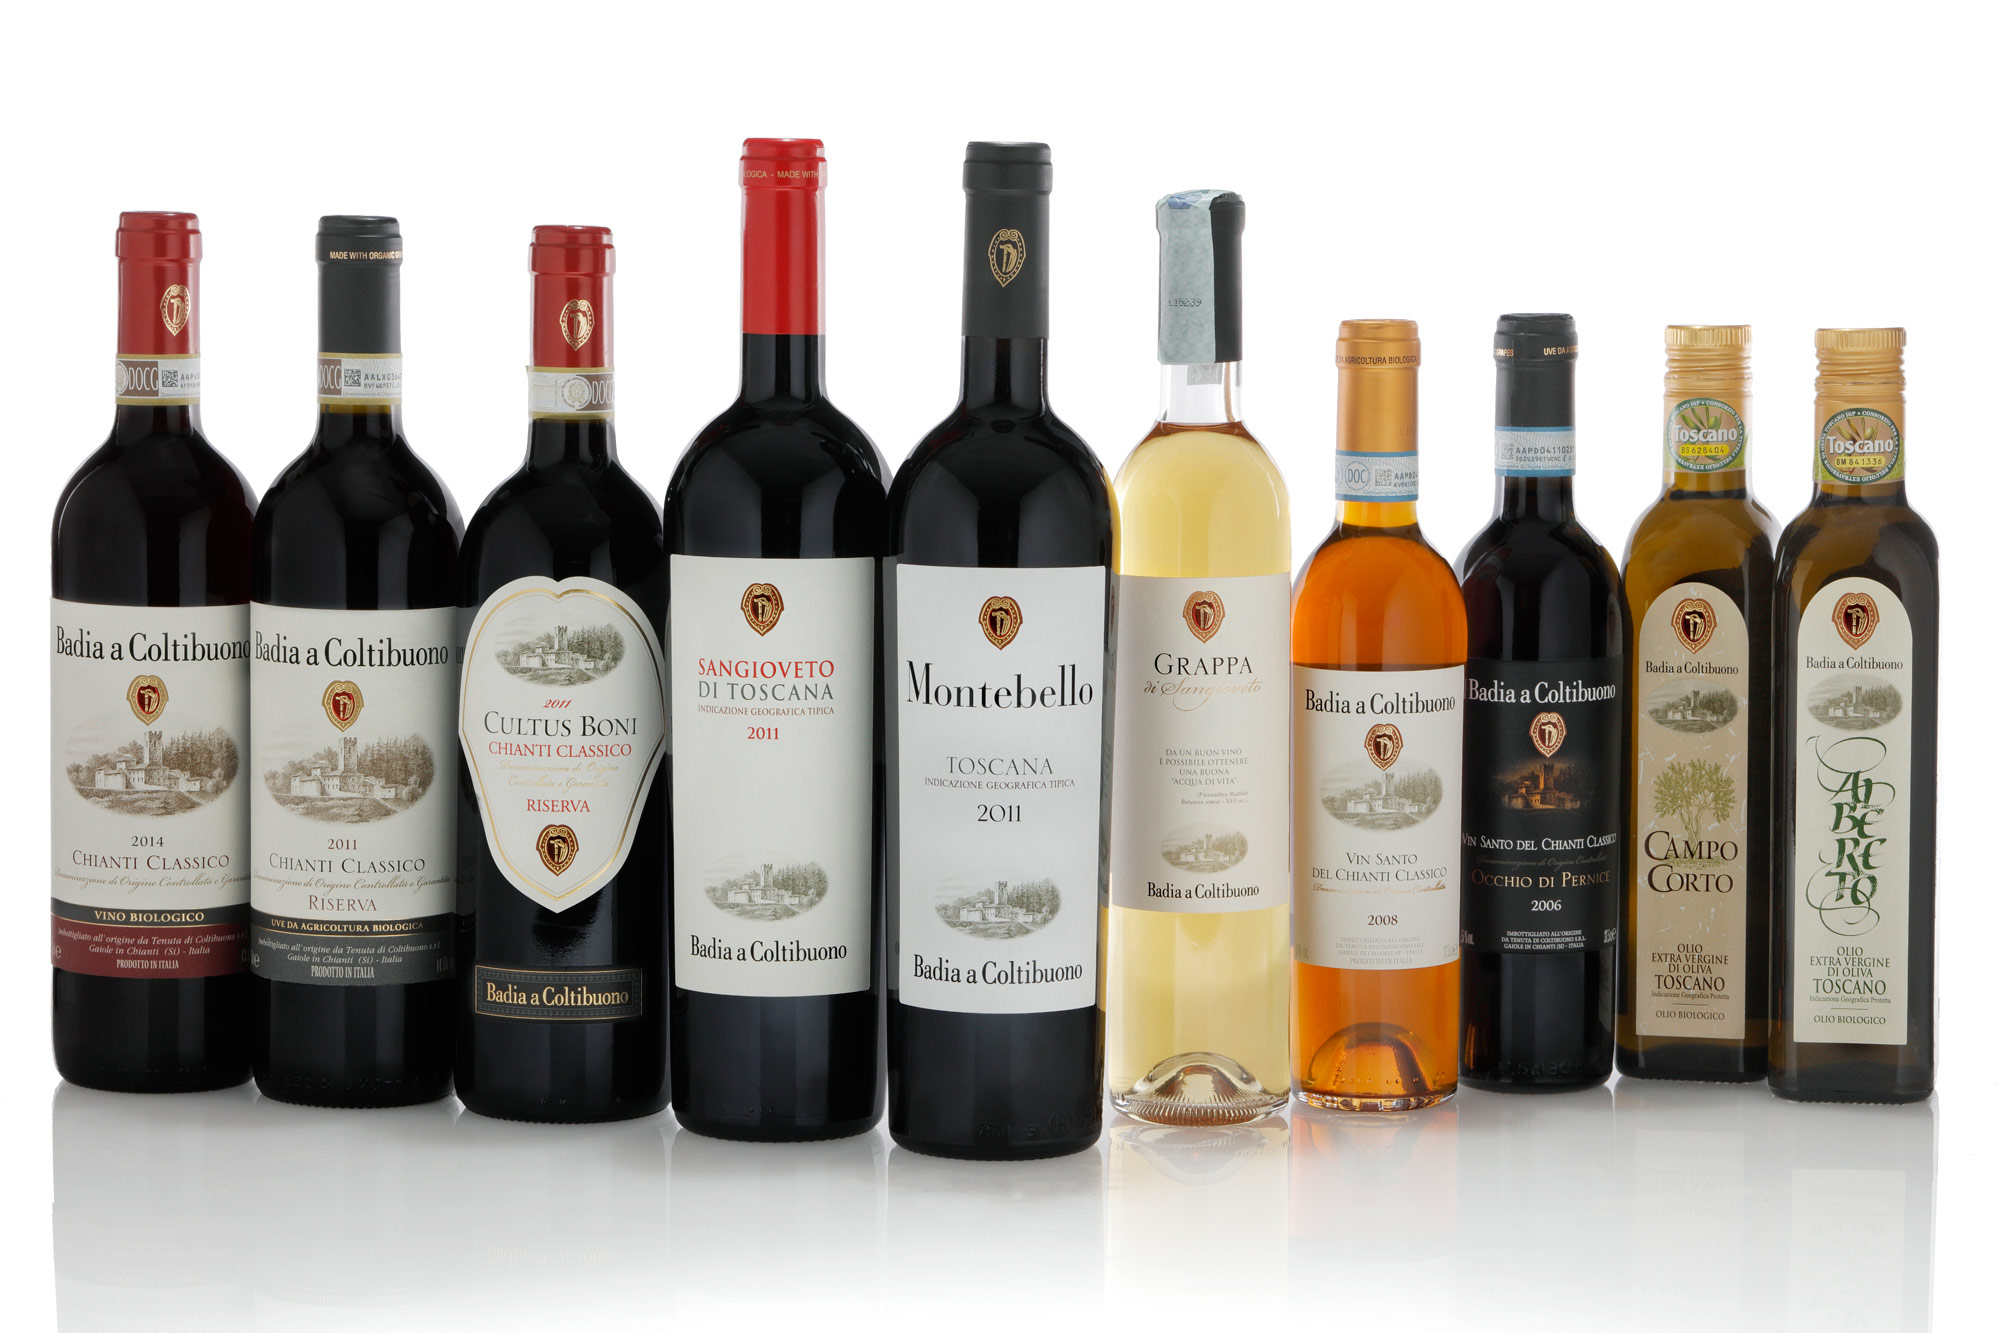 immagine fotografica di una serie di bottiglie di Vino, vinsanto, olio e grappa di Badia a Coltibuono su sfondo bianco